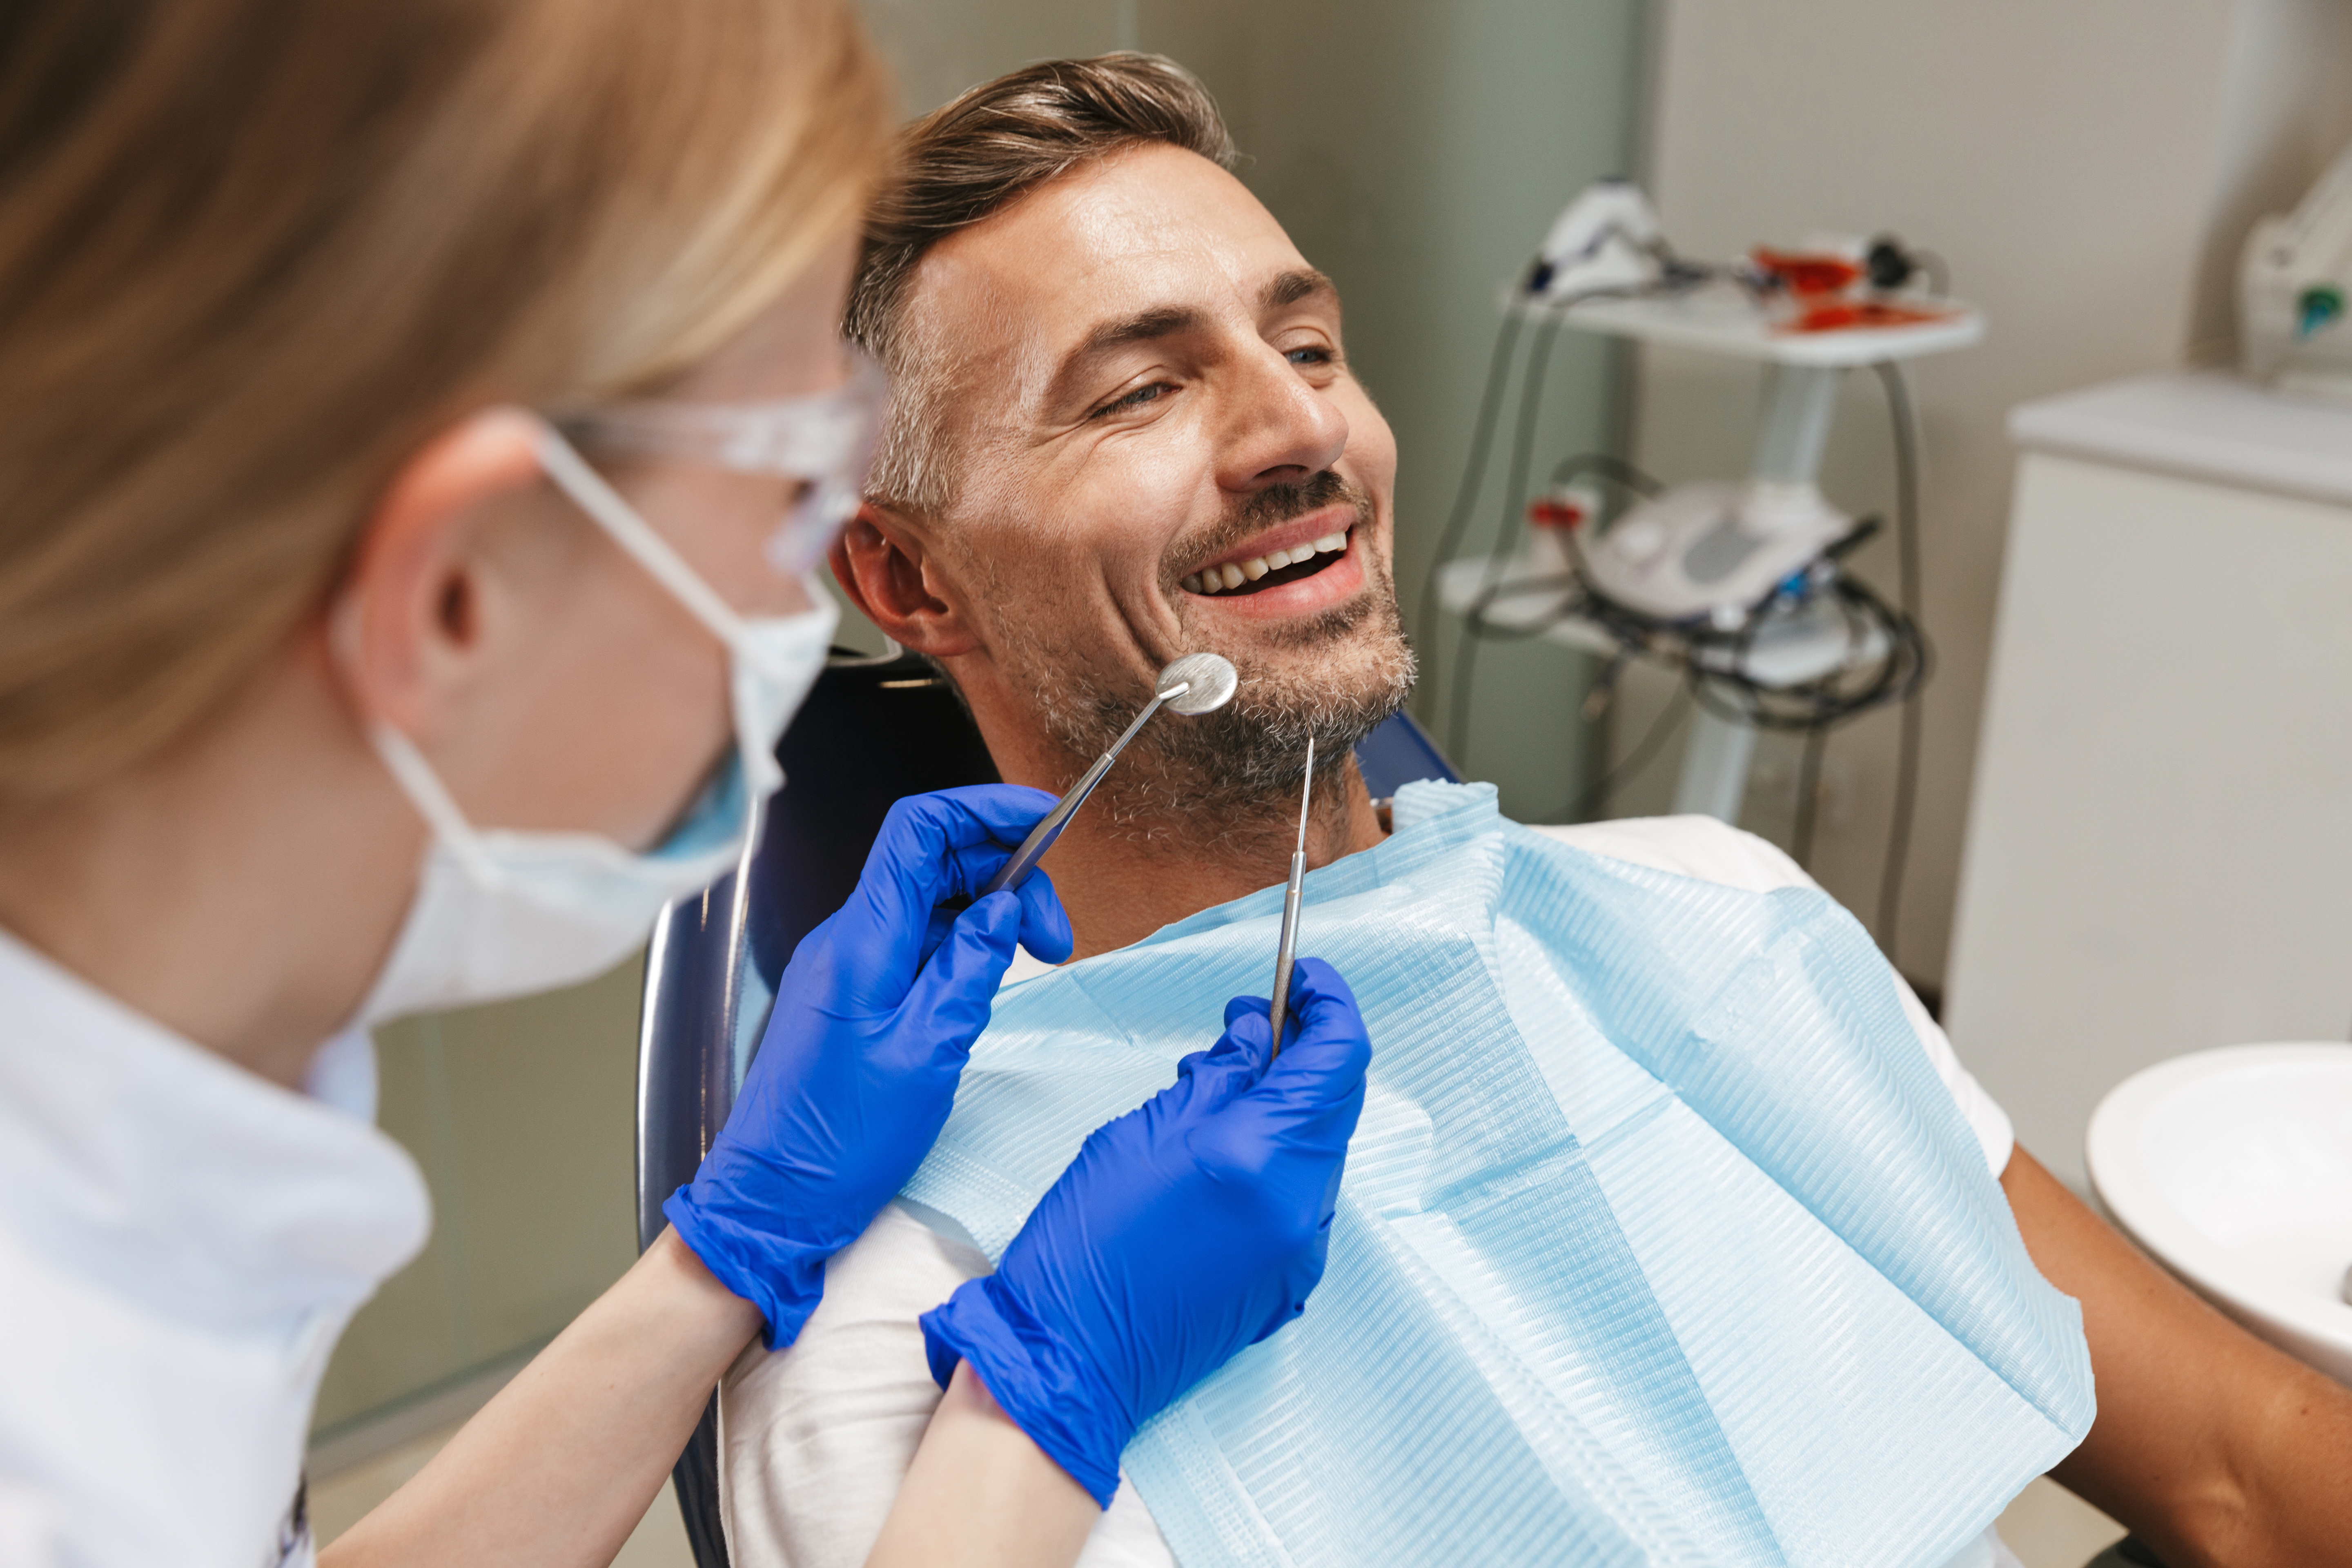 En cette période de Covid-19, des mesures sanitaires sont prises et appliquées pour protéger patients et dentistes avant et pendant les soins. © Drobot Dean, Adobe Stock